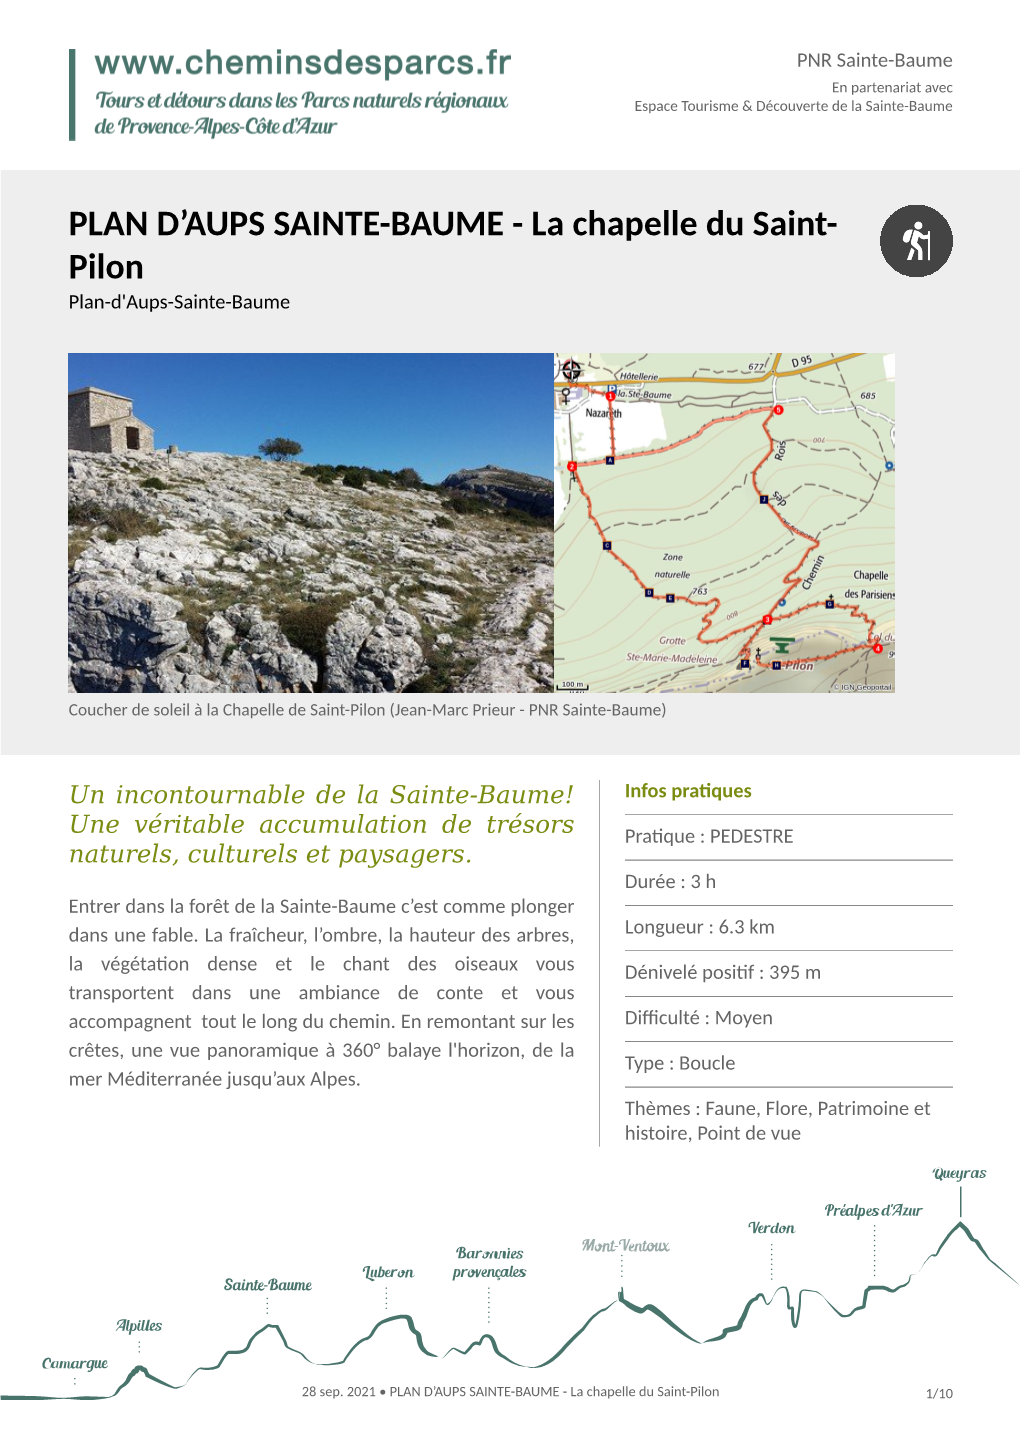 Plan D'aups Sainte-Baume Arrivée : Espace Tourisme & Découverte De La Sainte-Baume, Plan D'aups Sainte-Baume Balisage : GR® PR